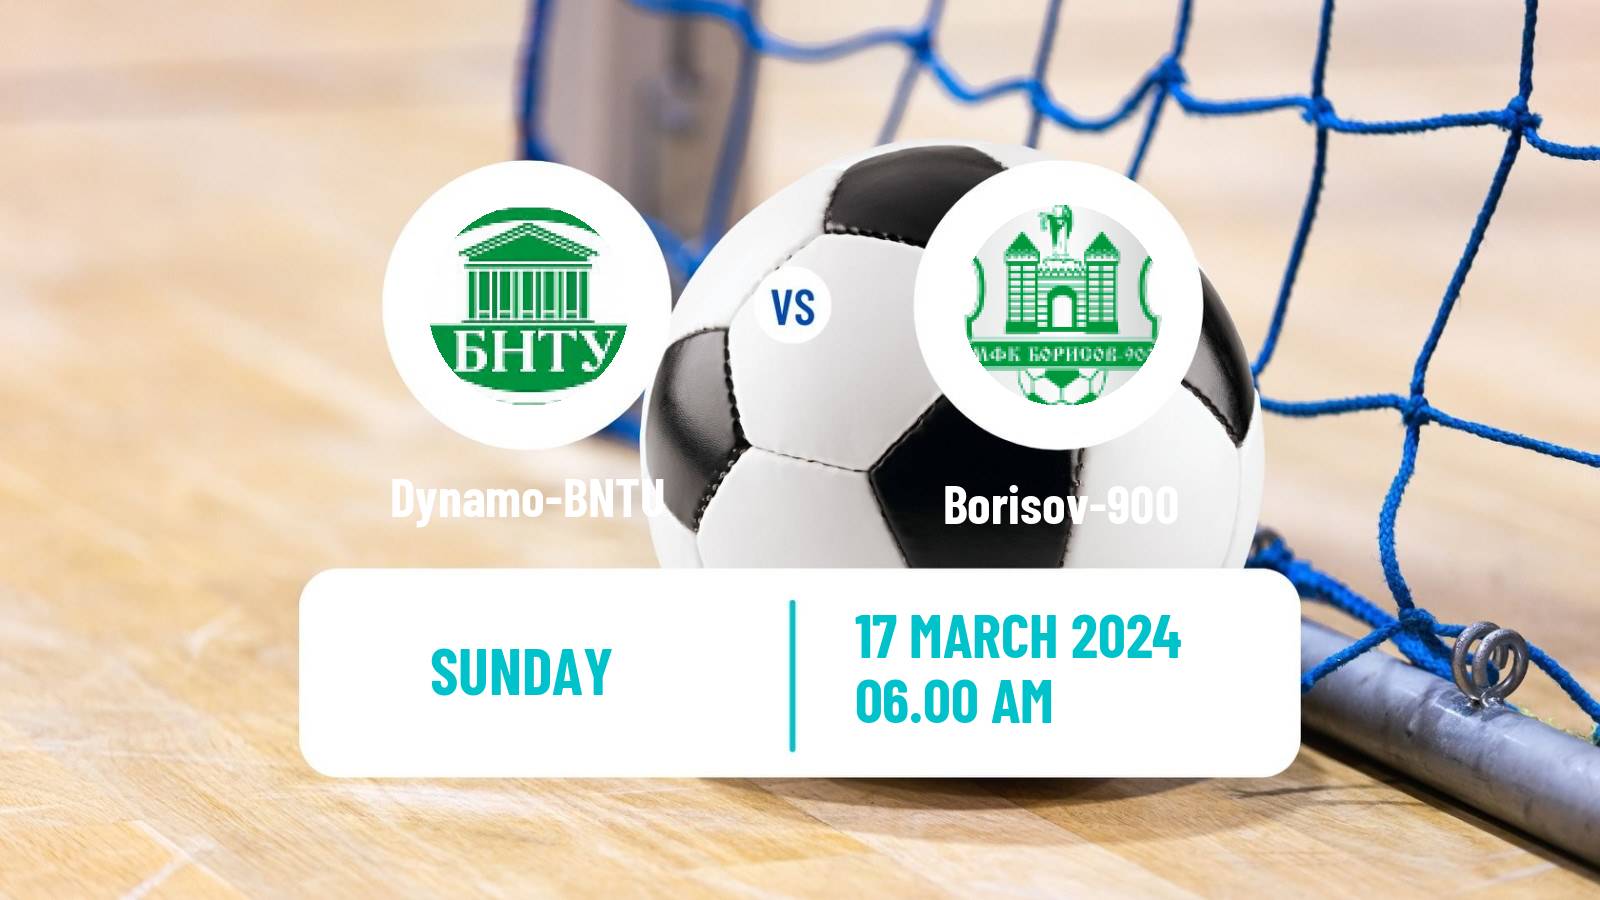 Futsal Belarusian Premier League Futsal Dynamo-BNTU - Borisov-900